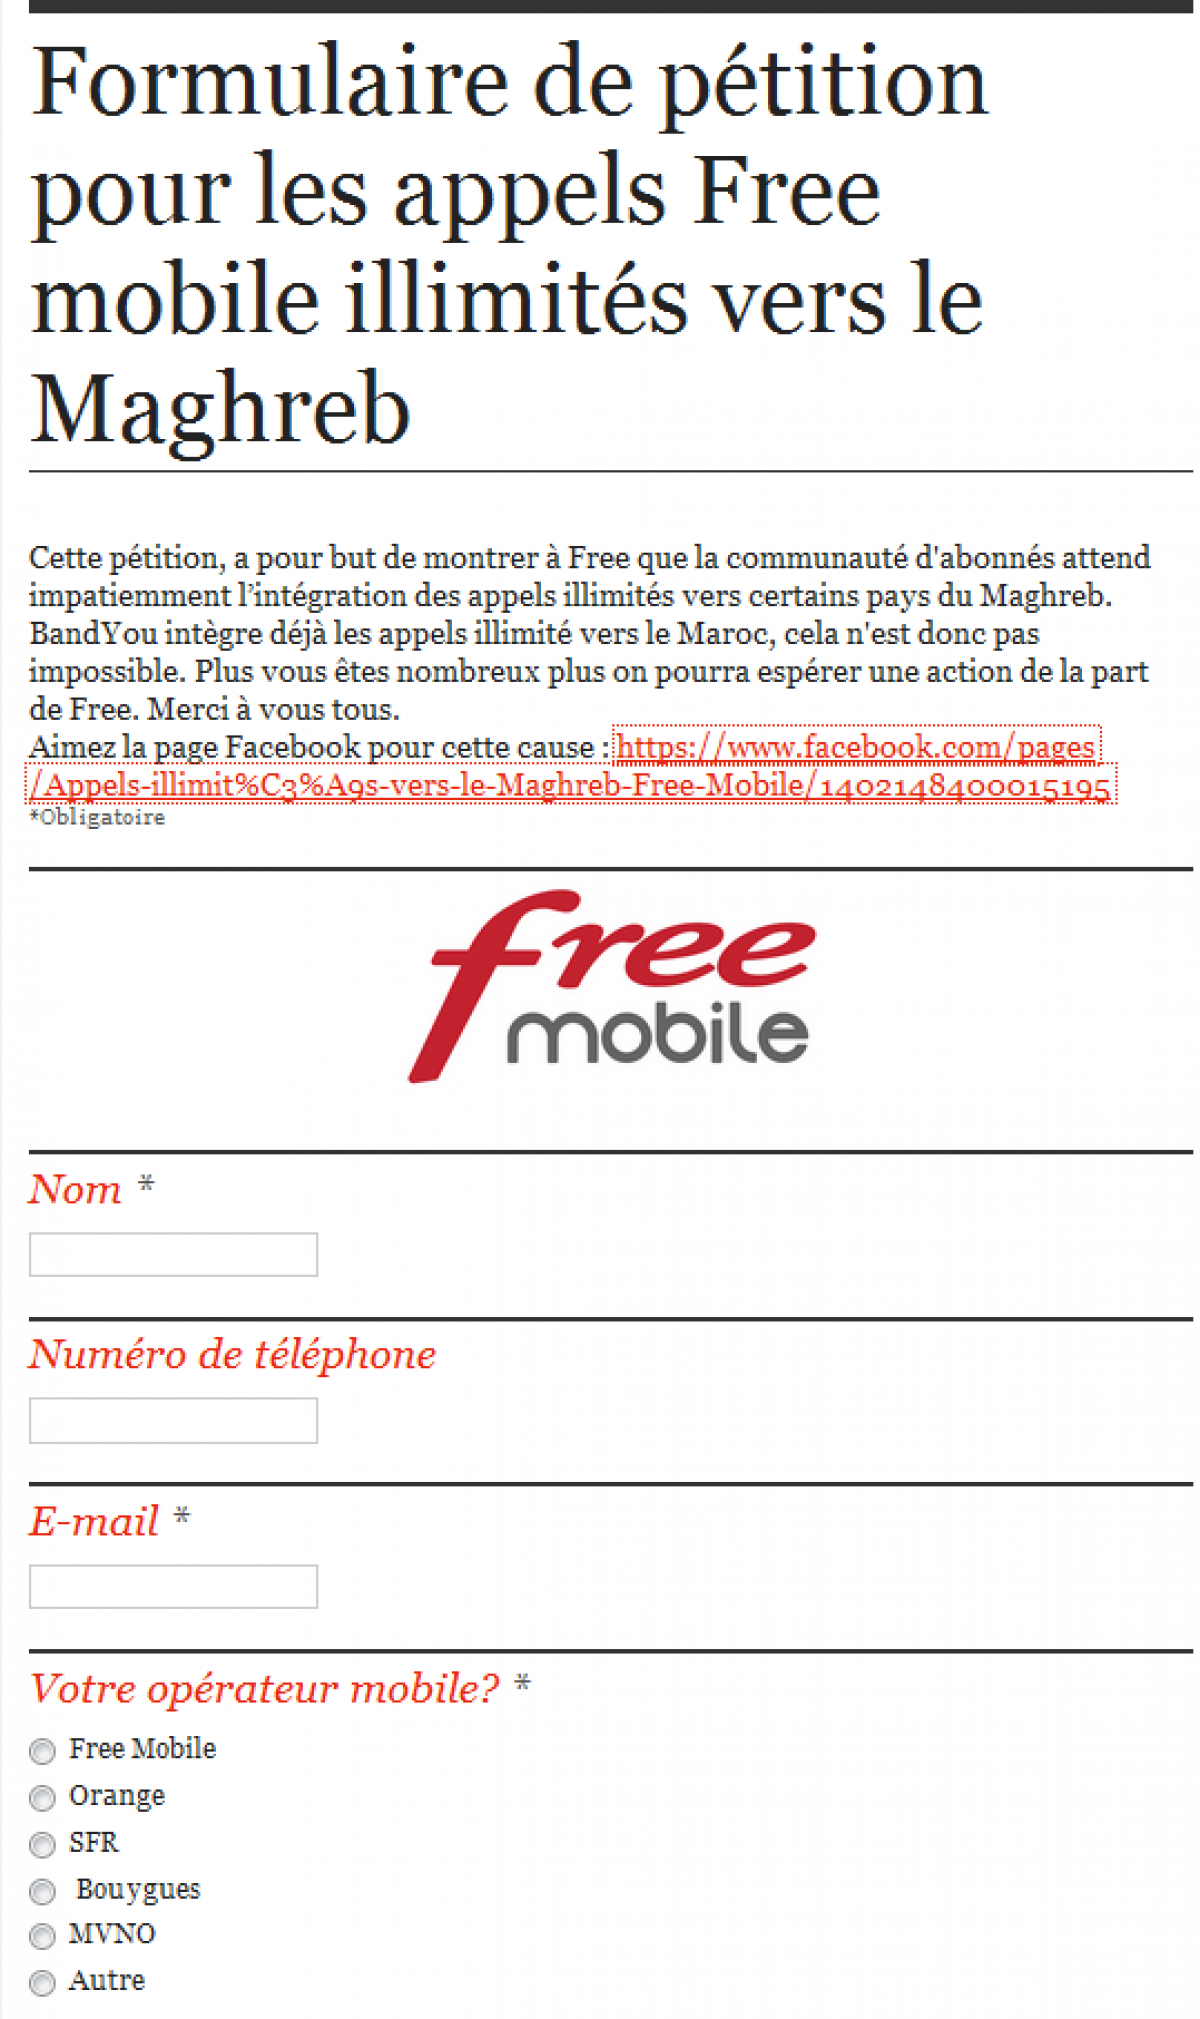 Des abonnés Free Mobile réclament les appels illimités vers le Maghreb